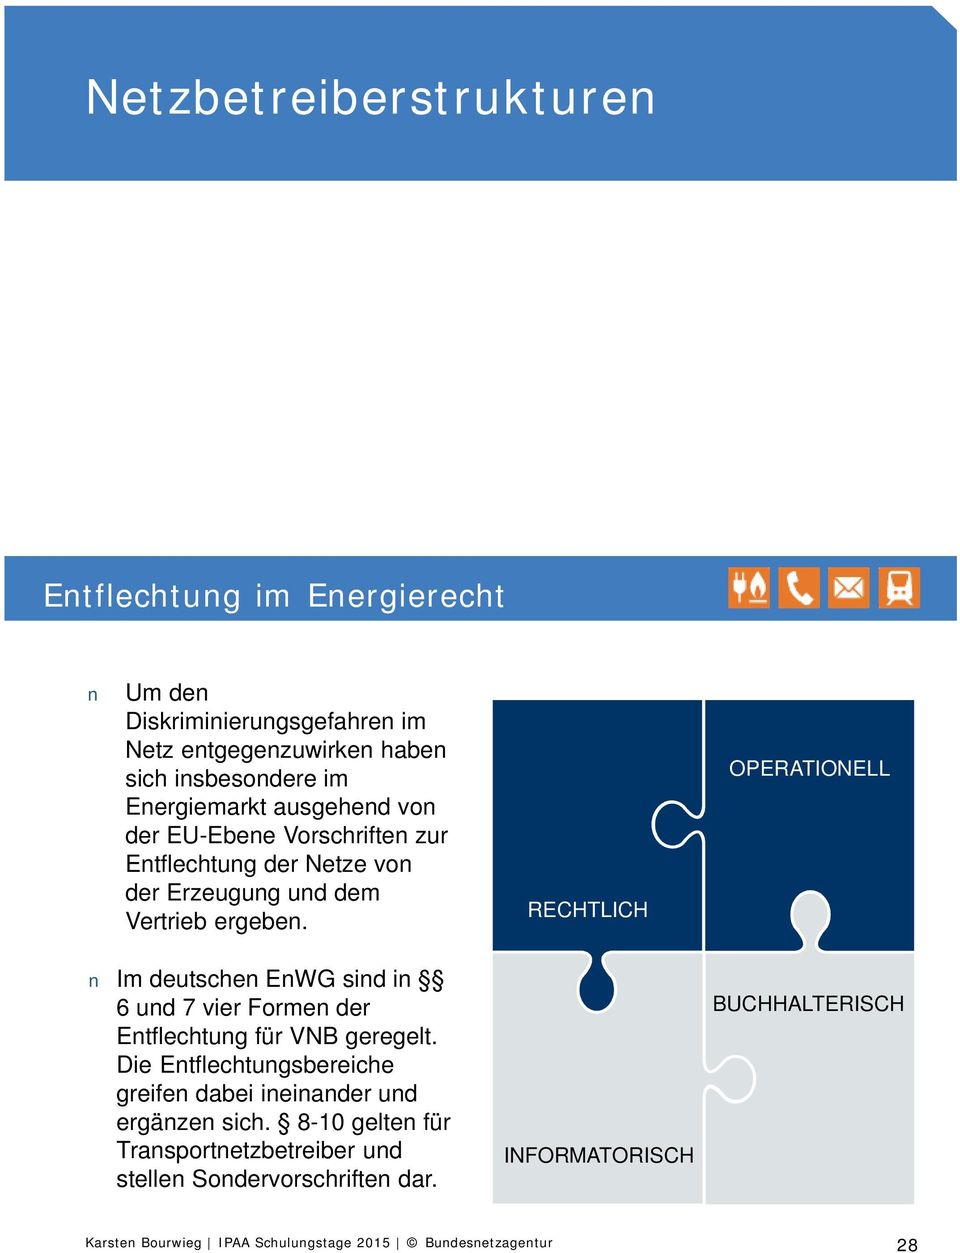 Im deutschen EnWG sind in 6 und 7 vier Frmen der Entflechtung für VNB geregelt.